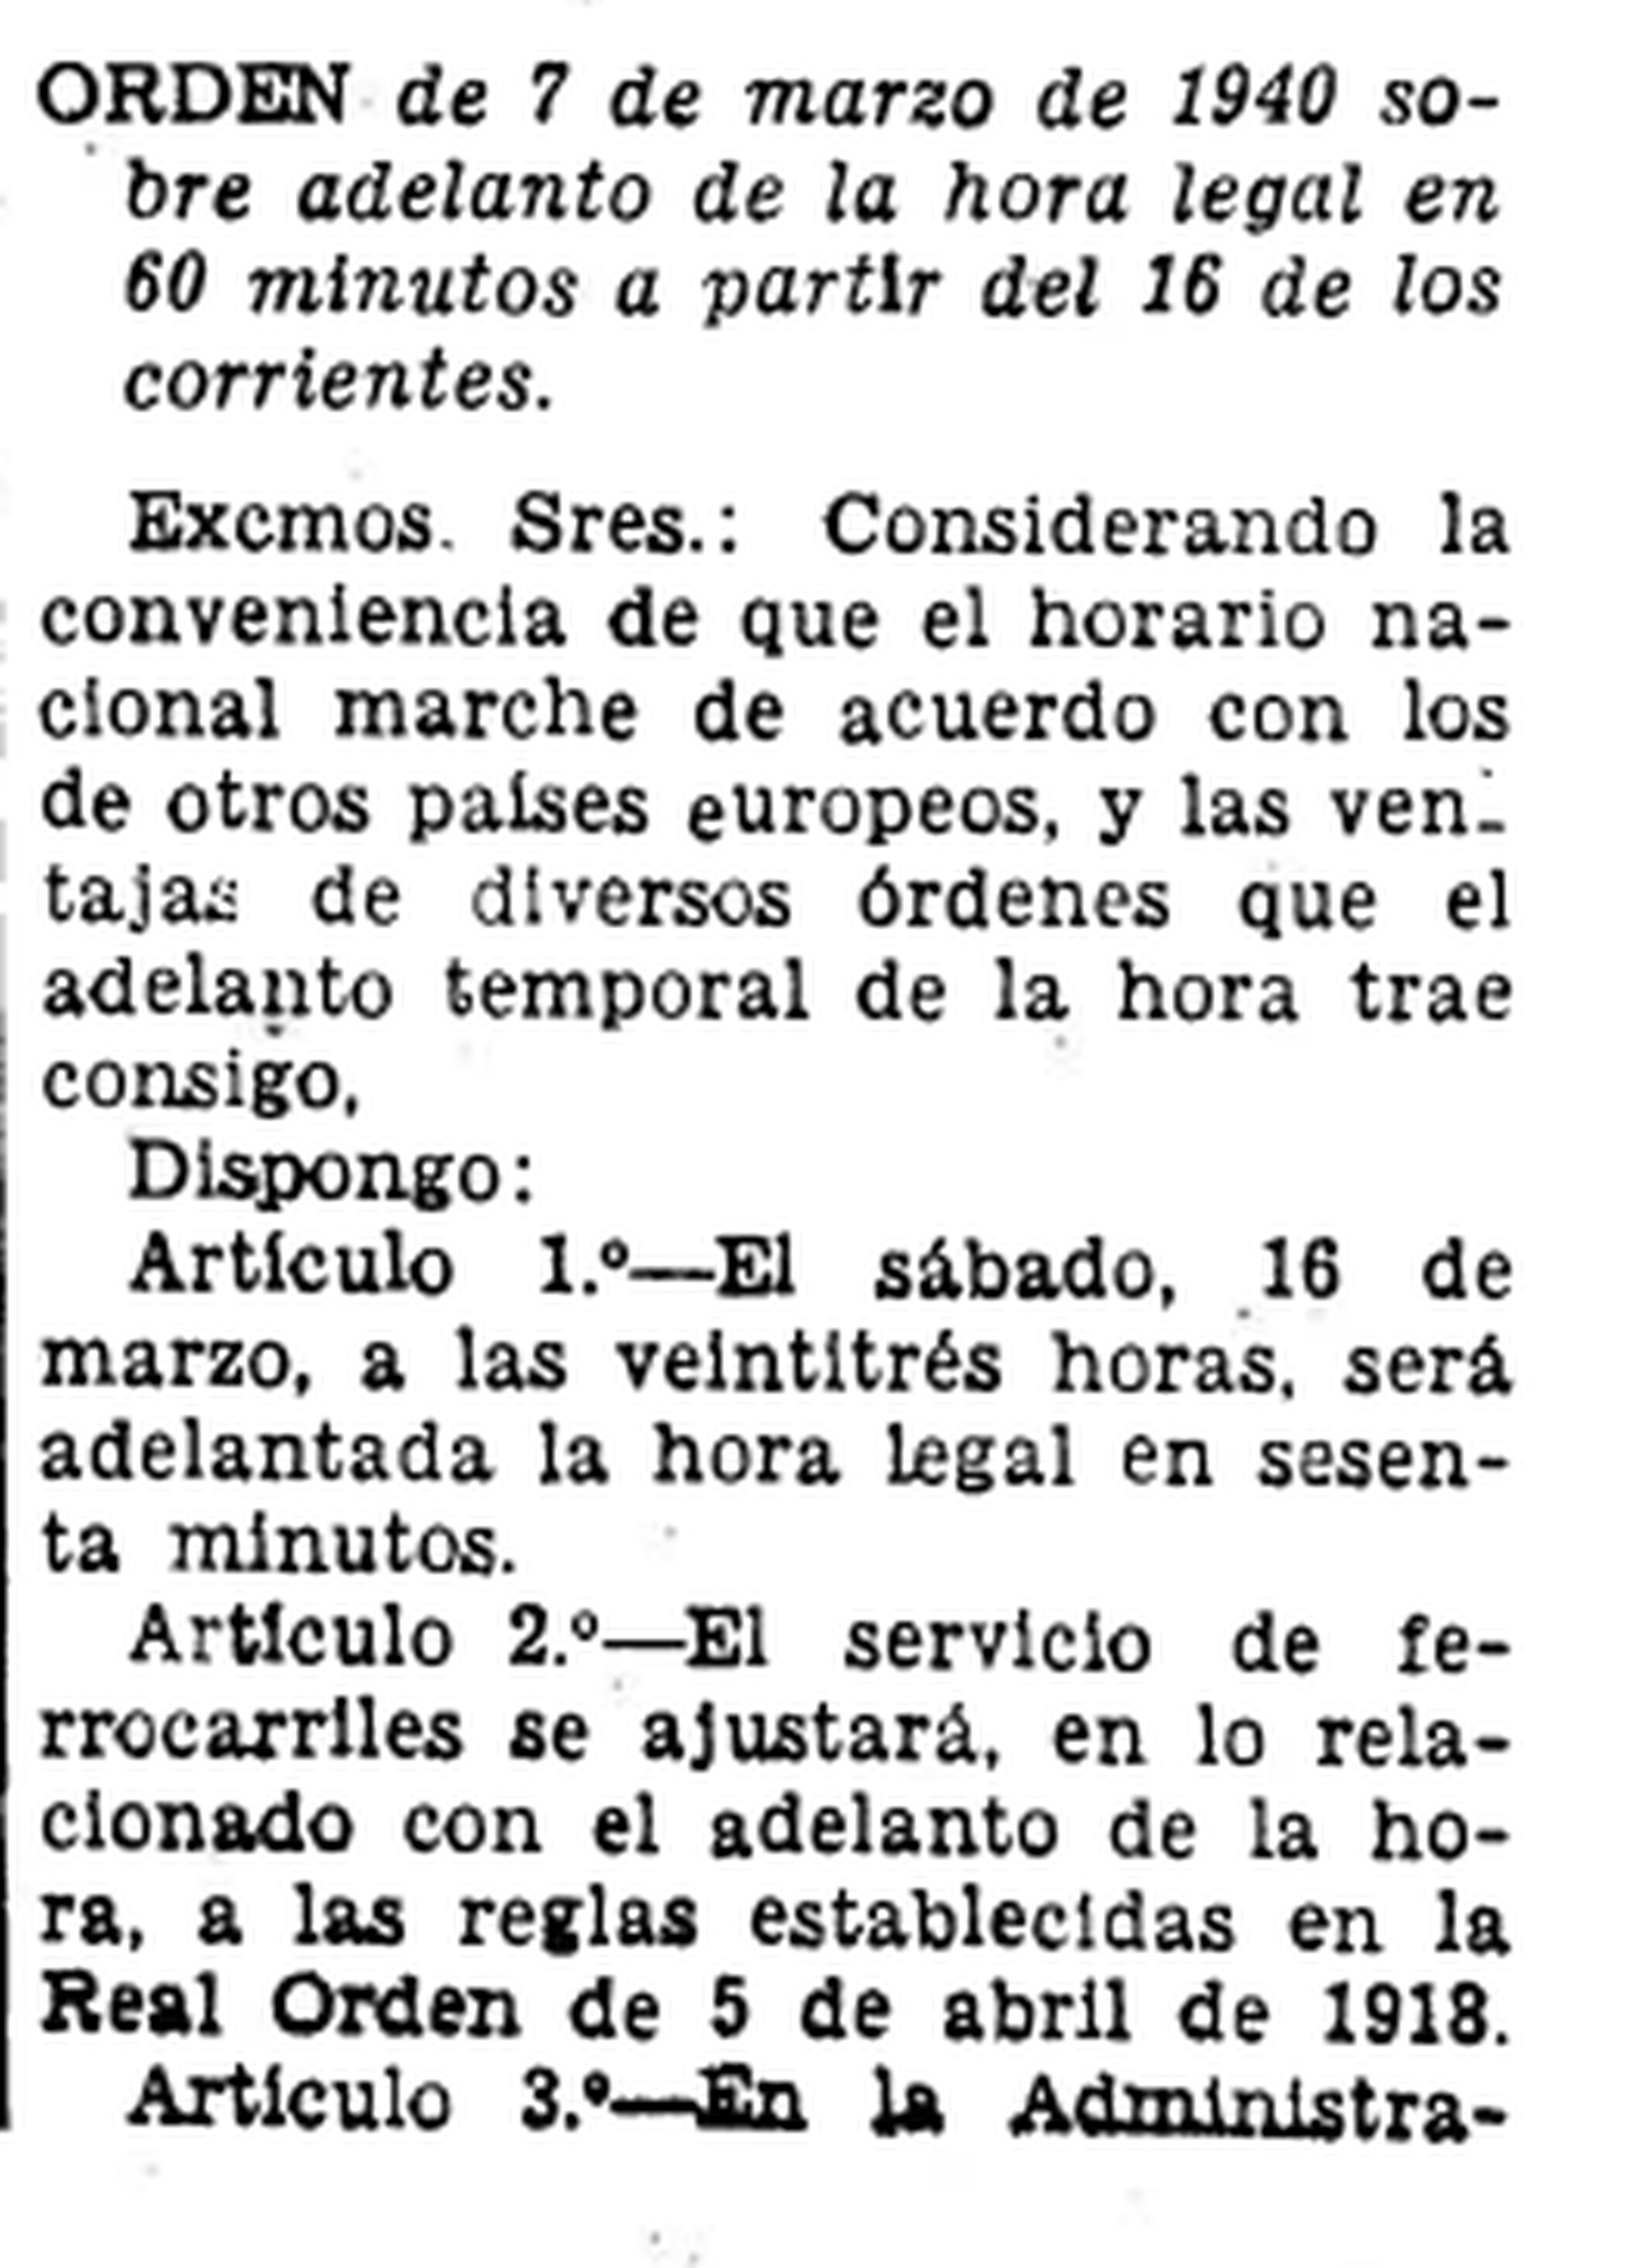 Cambio de hora en España en 1940 publicado en el Boletín Oficial del Estado.